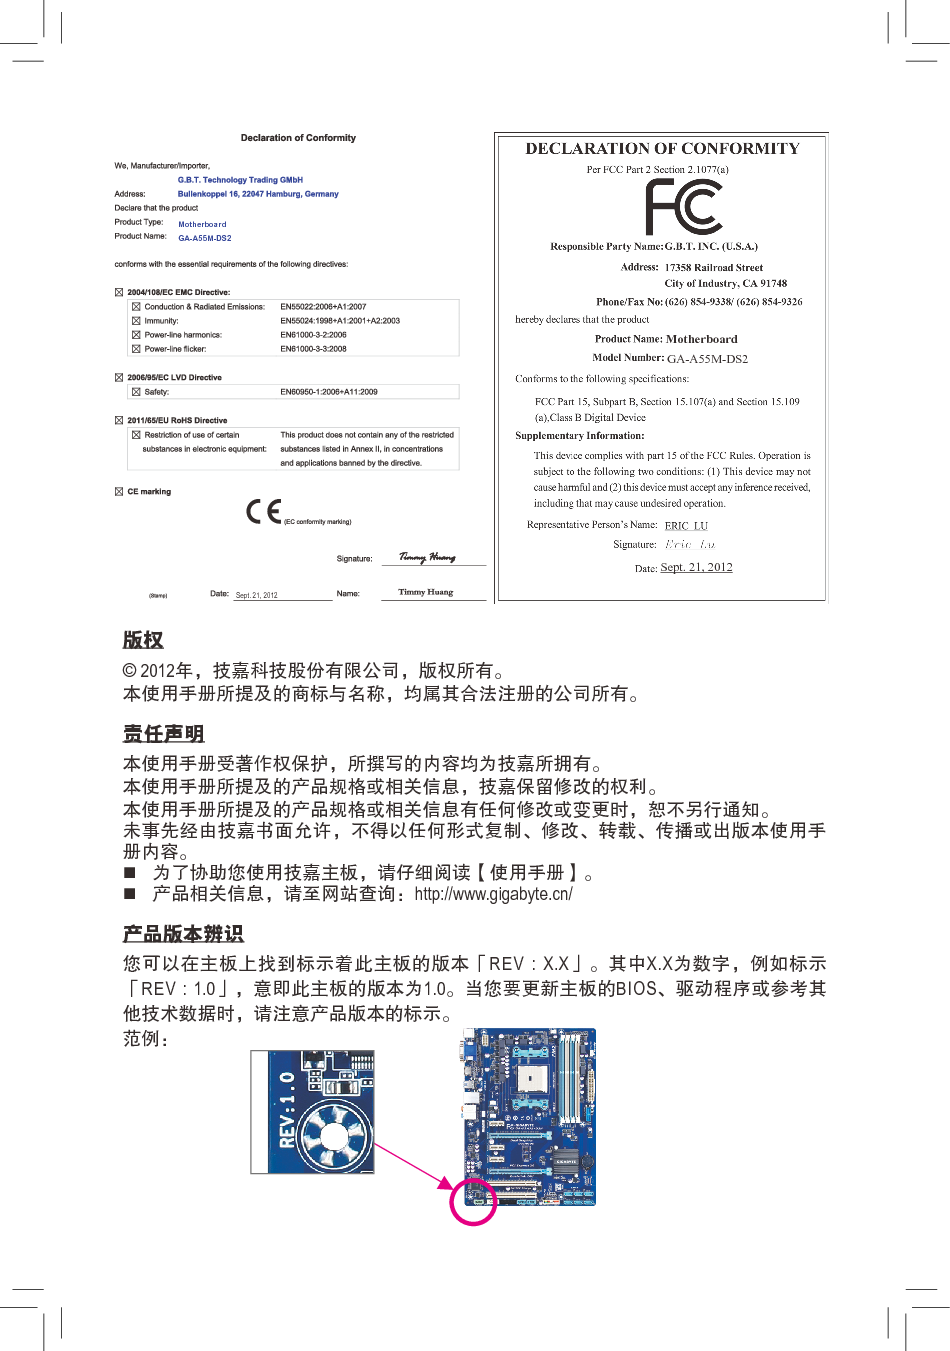 技嘉 Gigabyte GA-A55M-DS2 3002版 使用手册 第1页